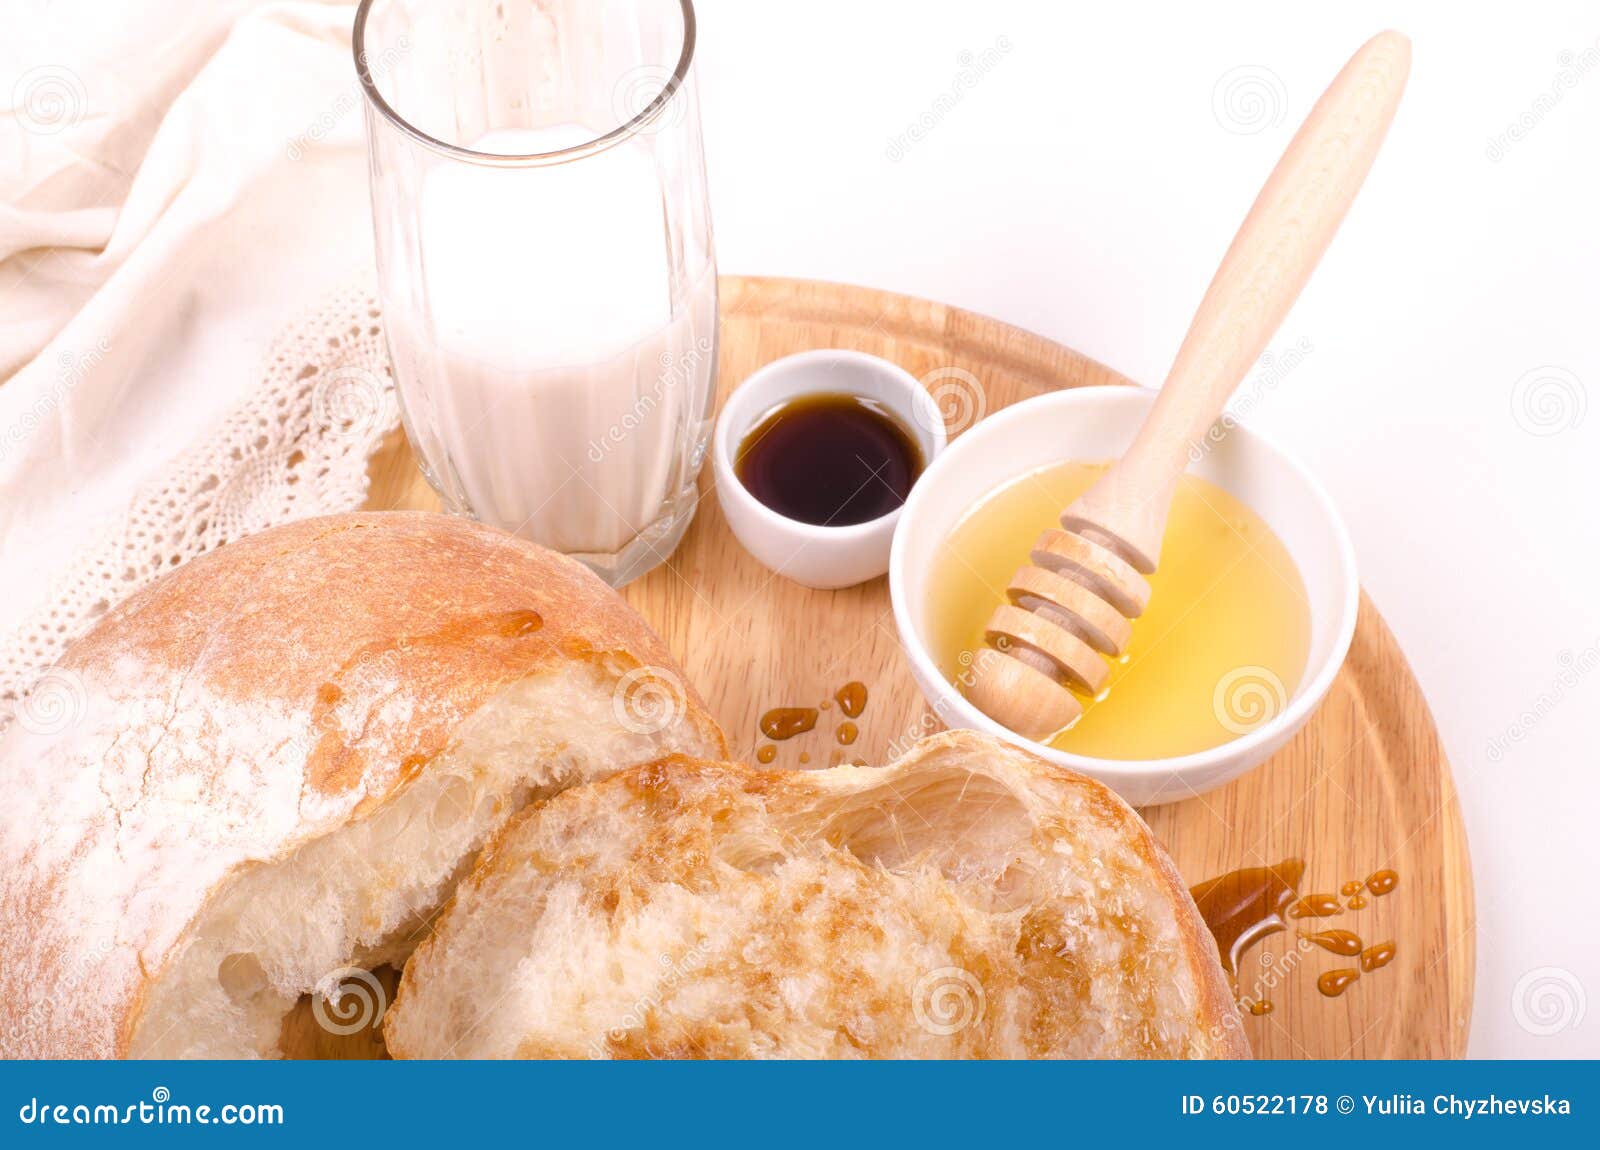 Молоко мед и масло пить. Хлеб молоко и мёд. Хлеб с медом. Хлеб с медом и сметаной. Белый хлеб с молоком.